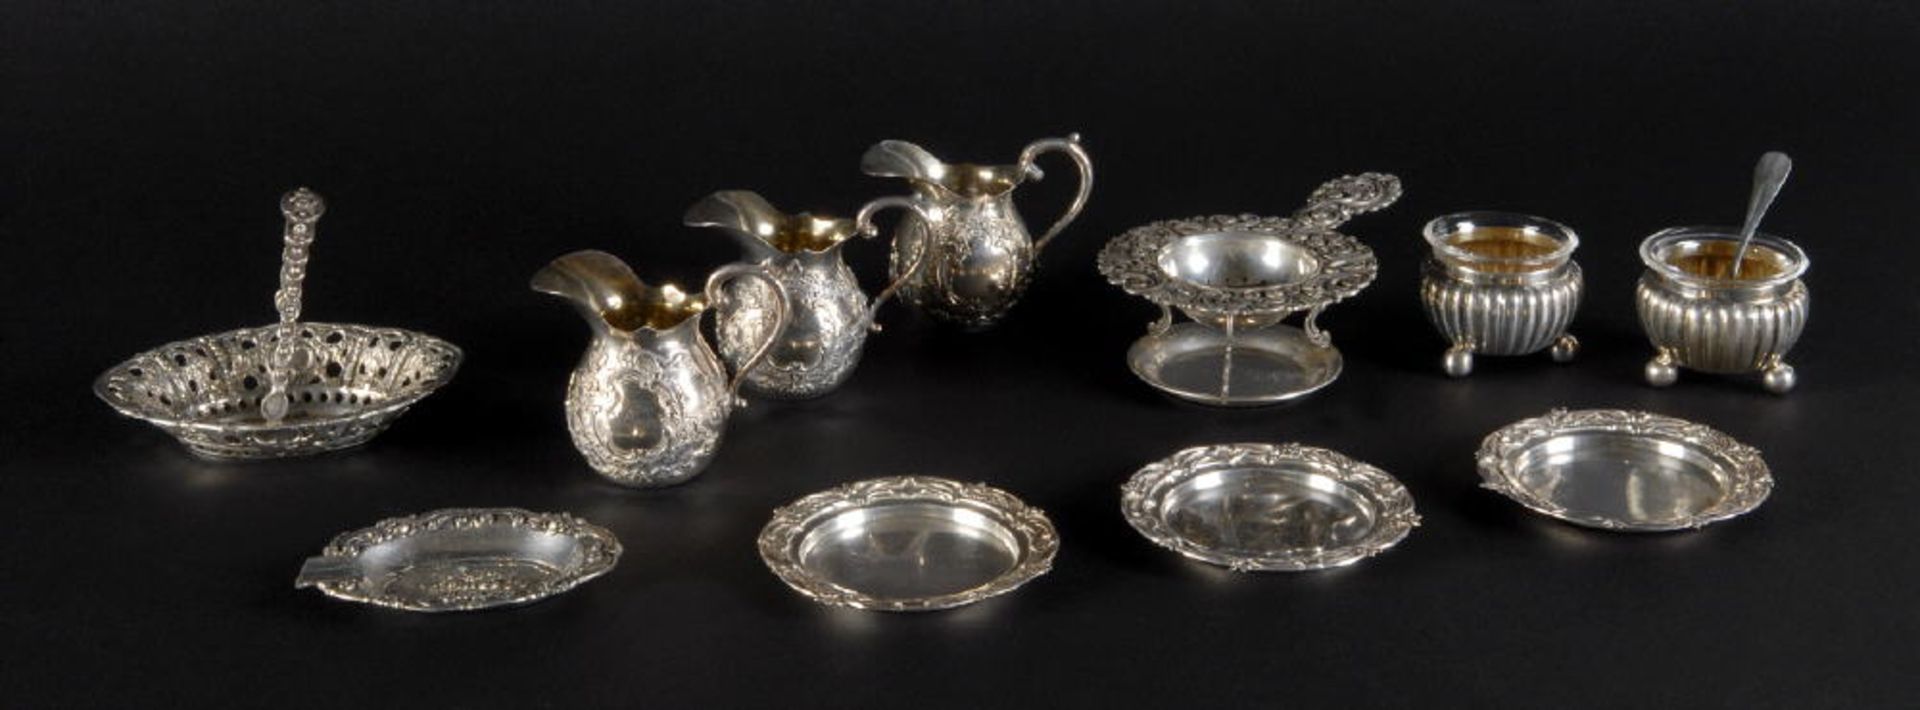 Silberteile, 13 Stückmeist 800 Silber, 300 g, versch. Formen u. Dekors, u.a. Gewürzschälchen,